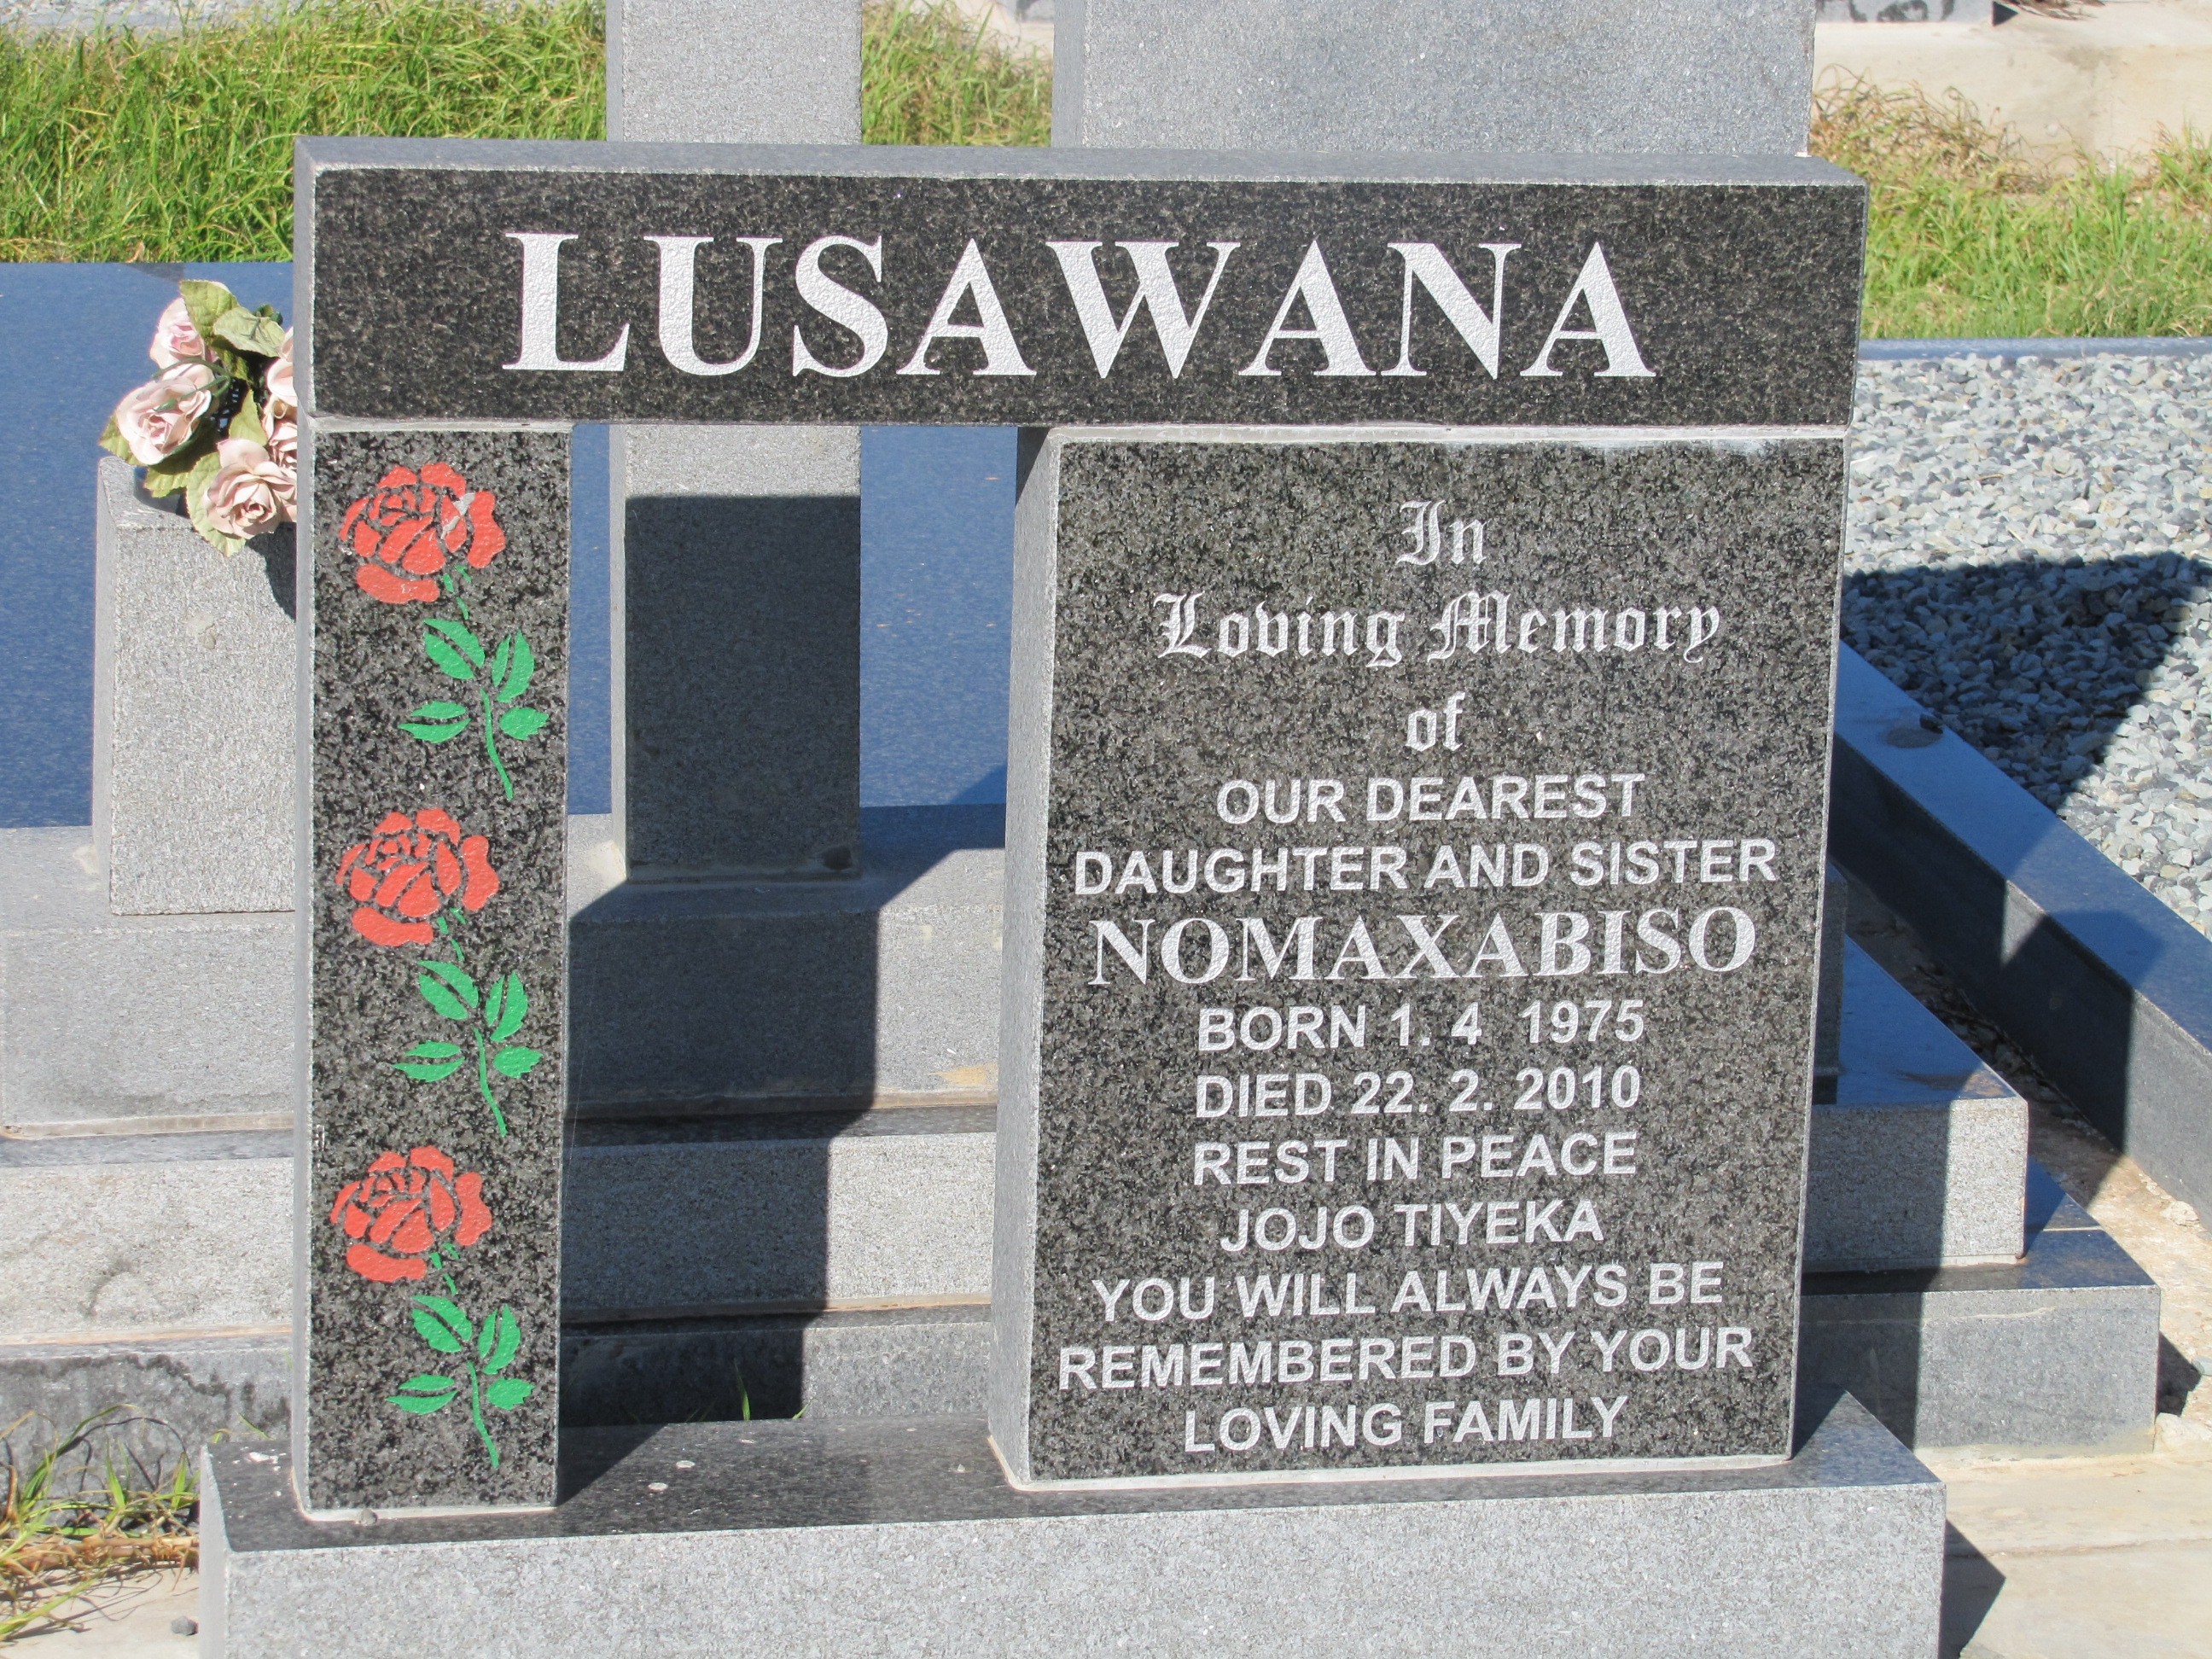 LUSAWANA Nomaxabiso 1975-2010